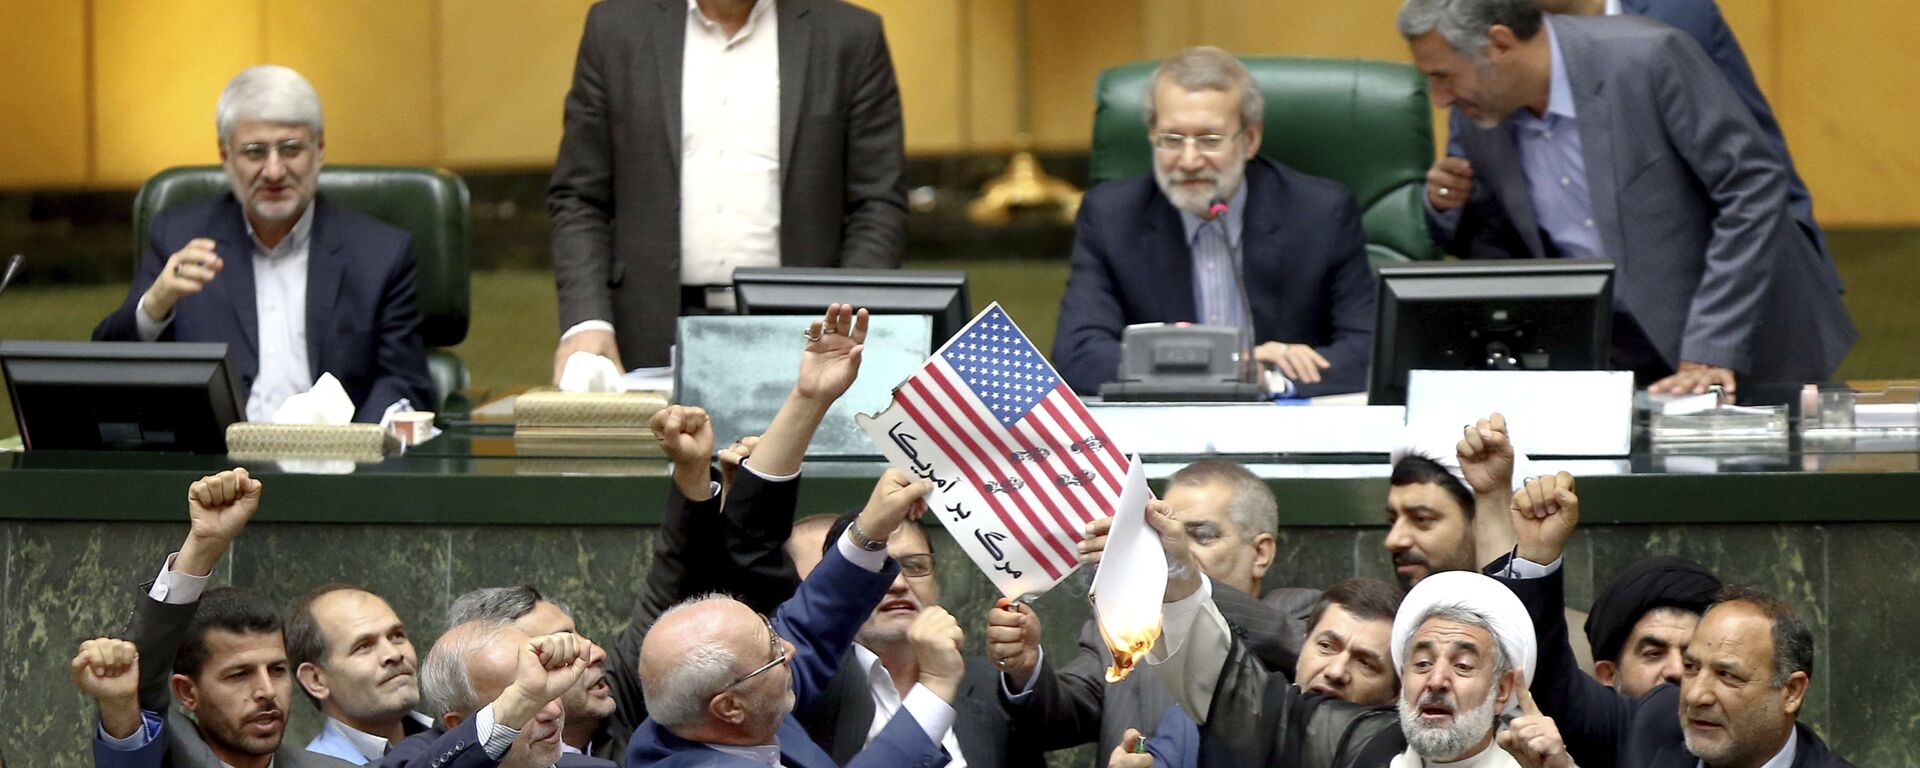  البرلمان الإيراني يحرق أوراق عليها علم الولايات المتحدة بعد خروج دونالد ترامب من صفقة الاتفاق النووي مع إيران، 9 مايو/ أيار 2018 - سبوتنيك عربي, 1920, 05.02.2021